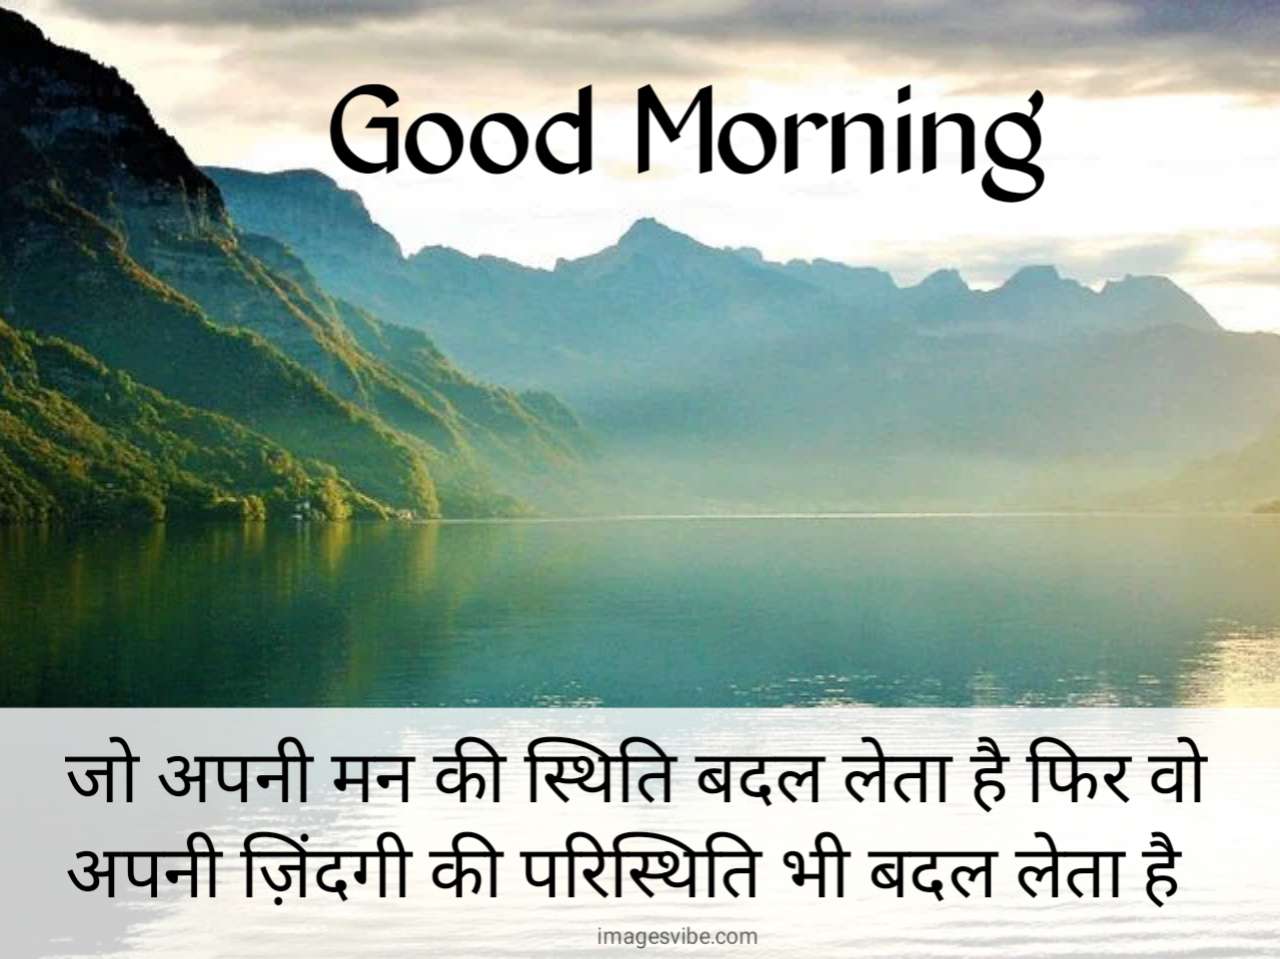 Good Morning Hindi Images